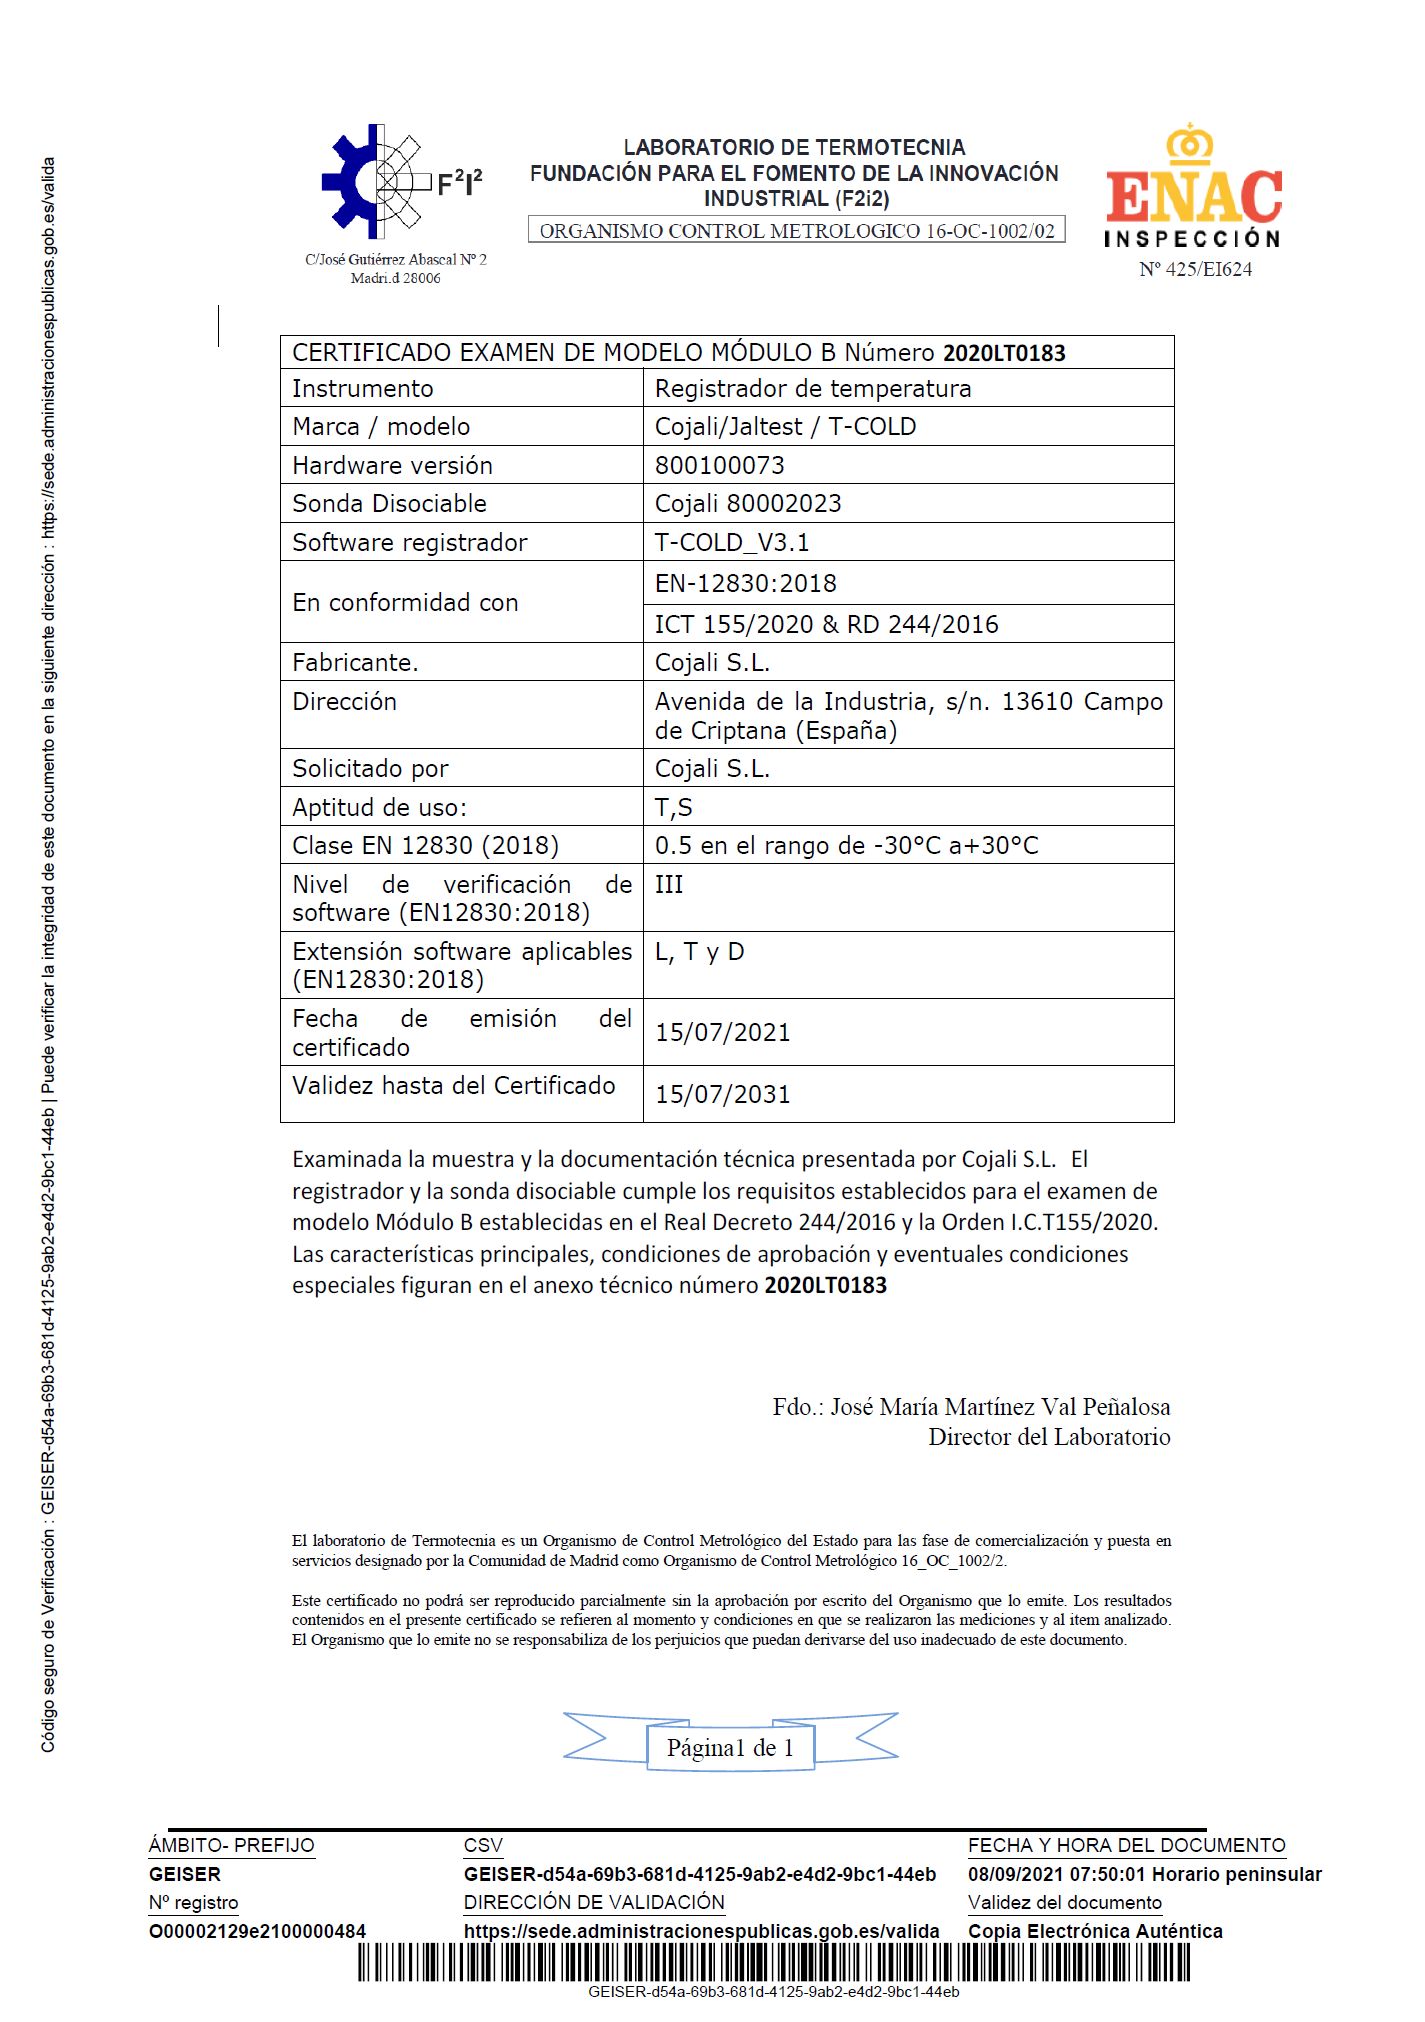 Certificado examen de modelo Módulo B nº 2020LT0183